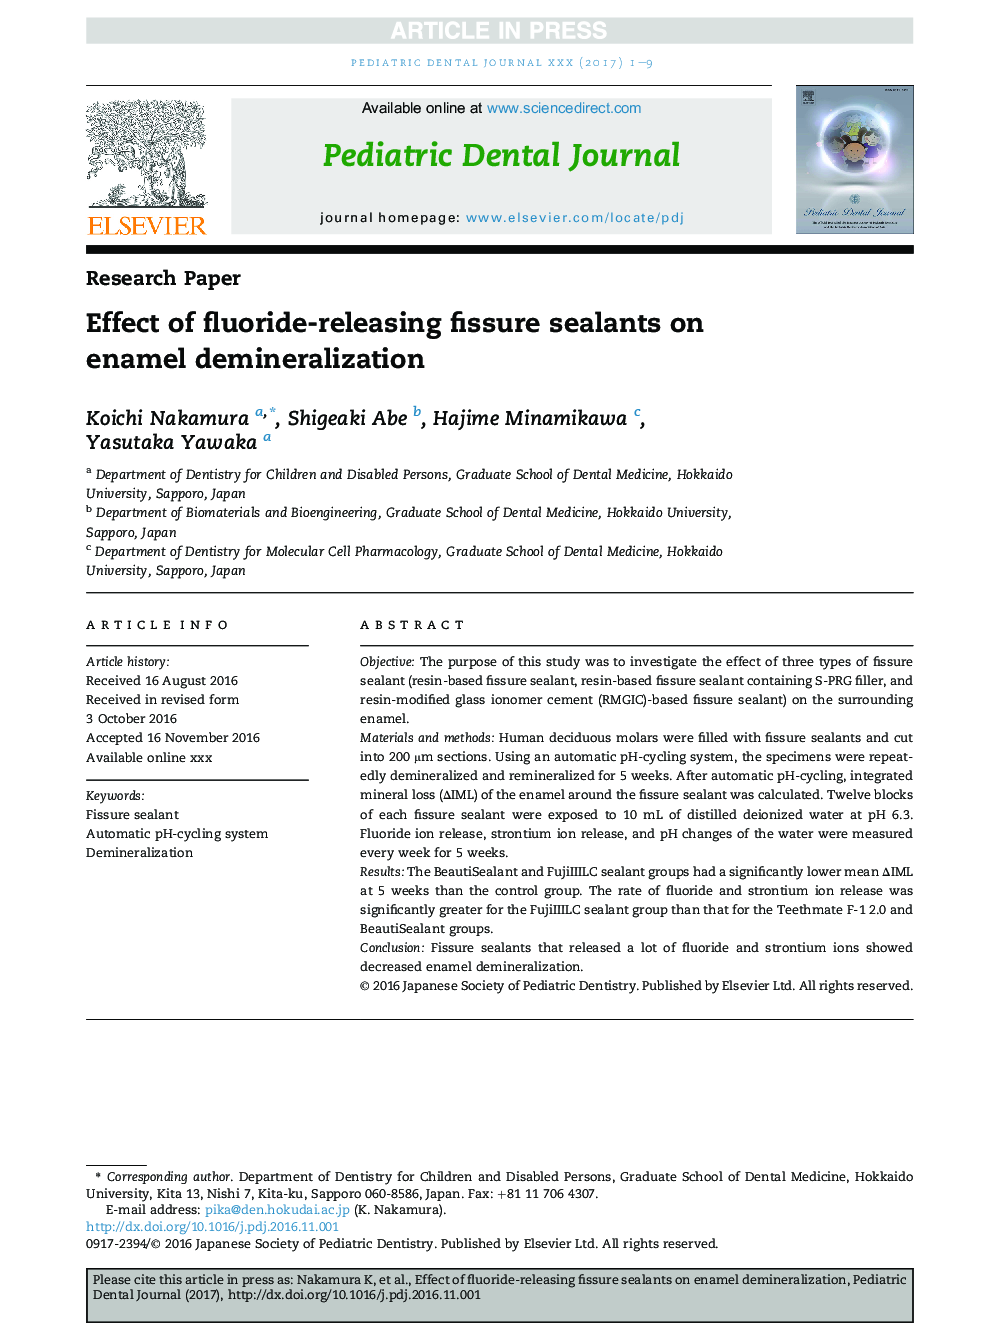 Effect of fluoride-releasing fissure sealants on enamel demineralization